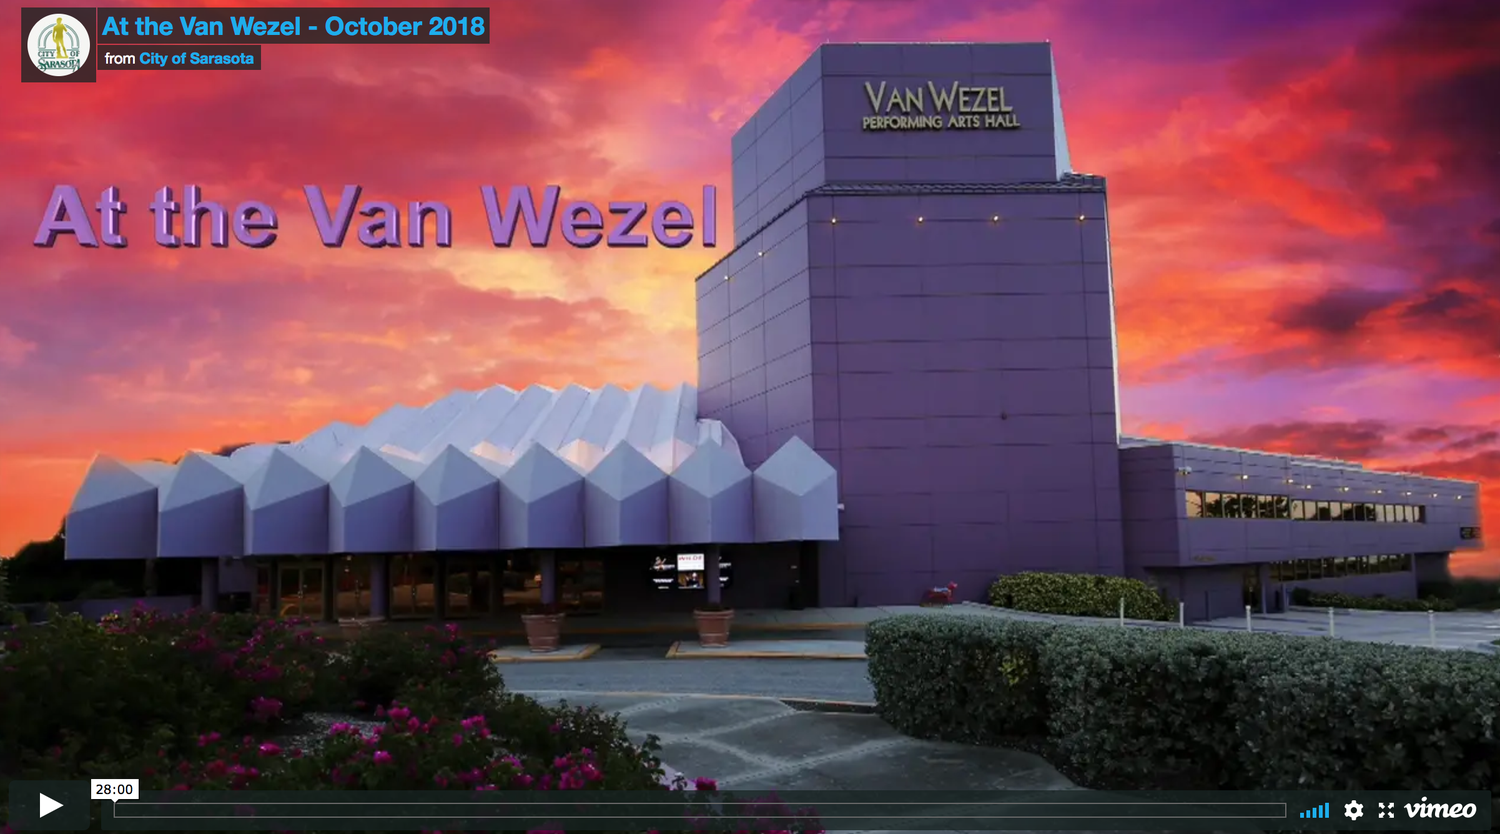 At The Van Wezel - October 2018